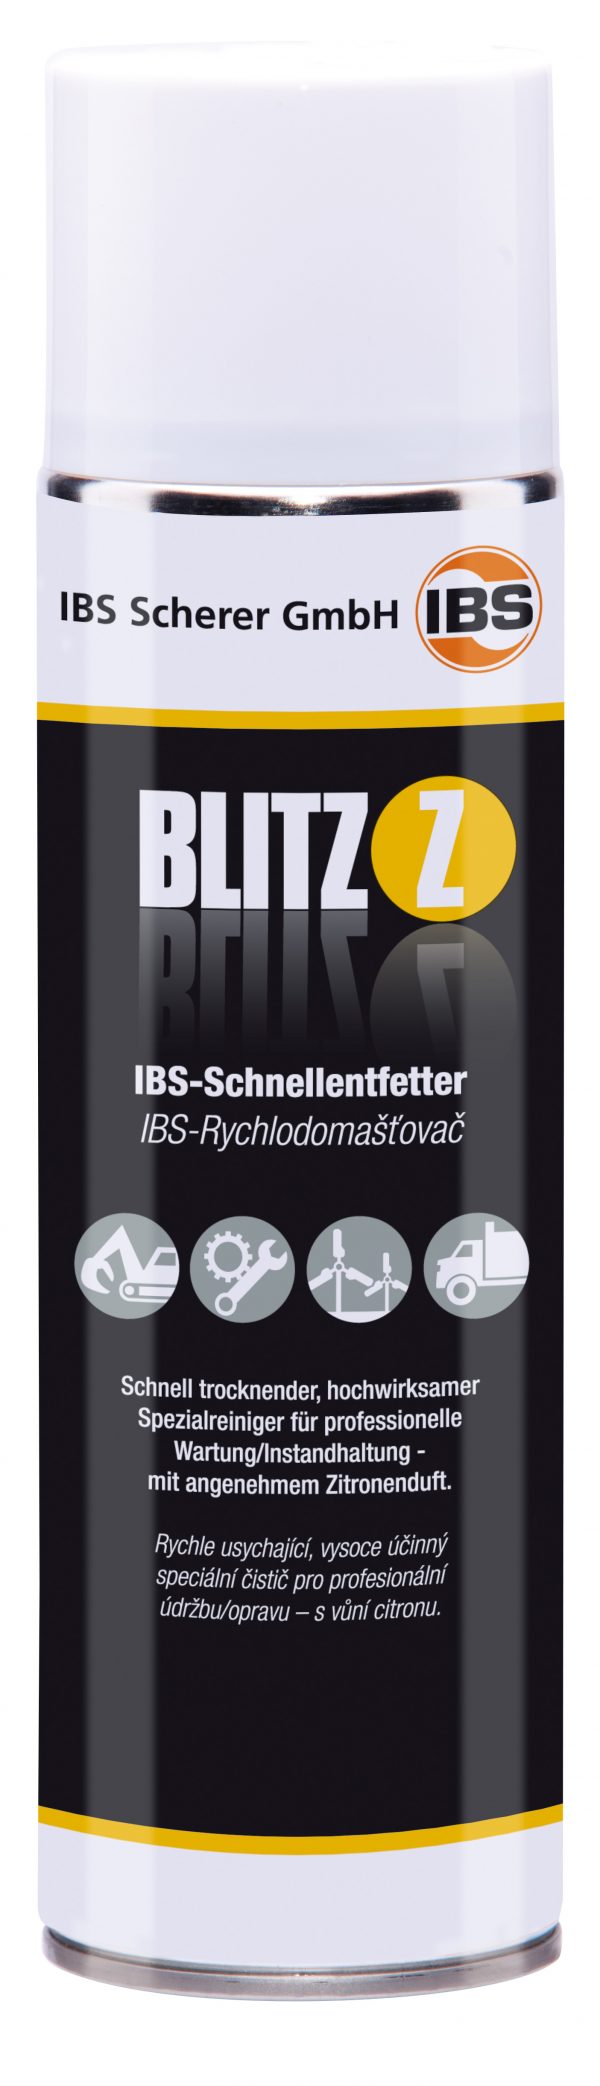 IBS-Schnellentfetter Blitz-Z